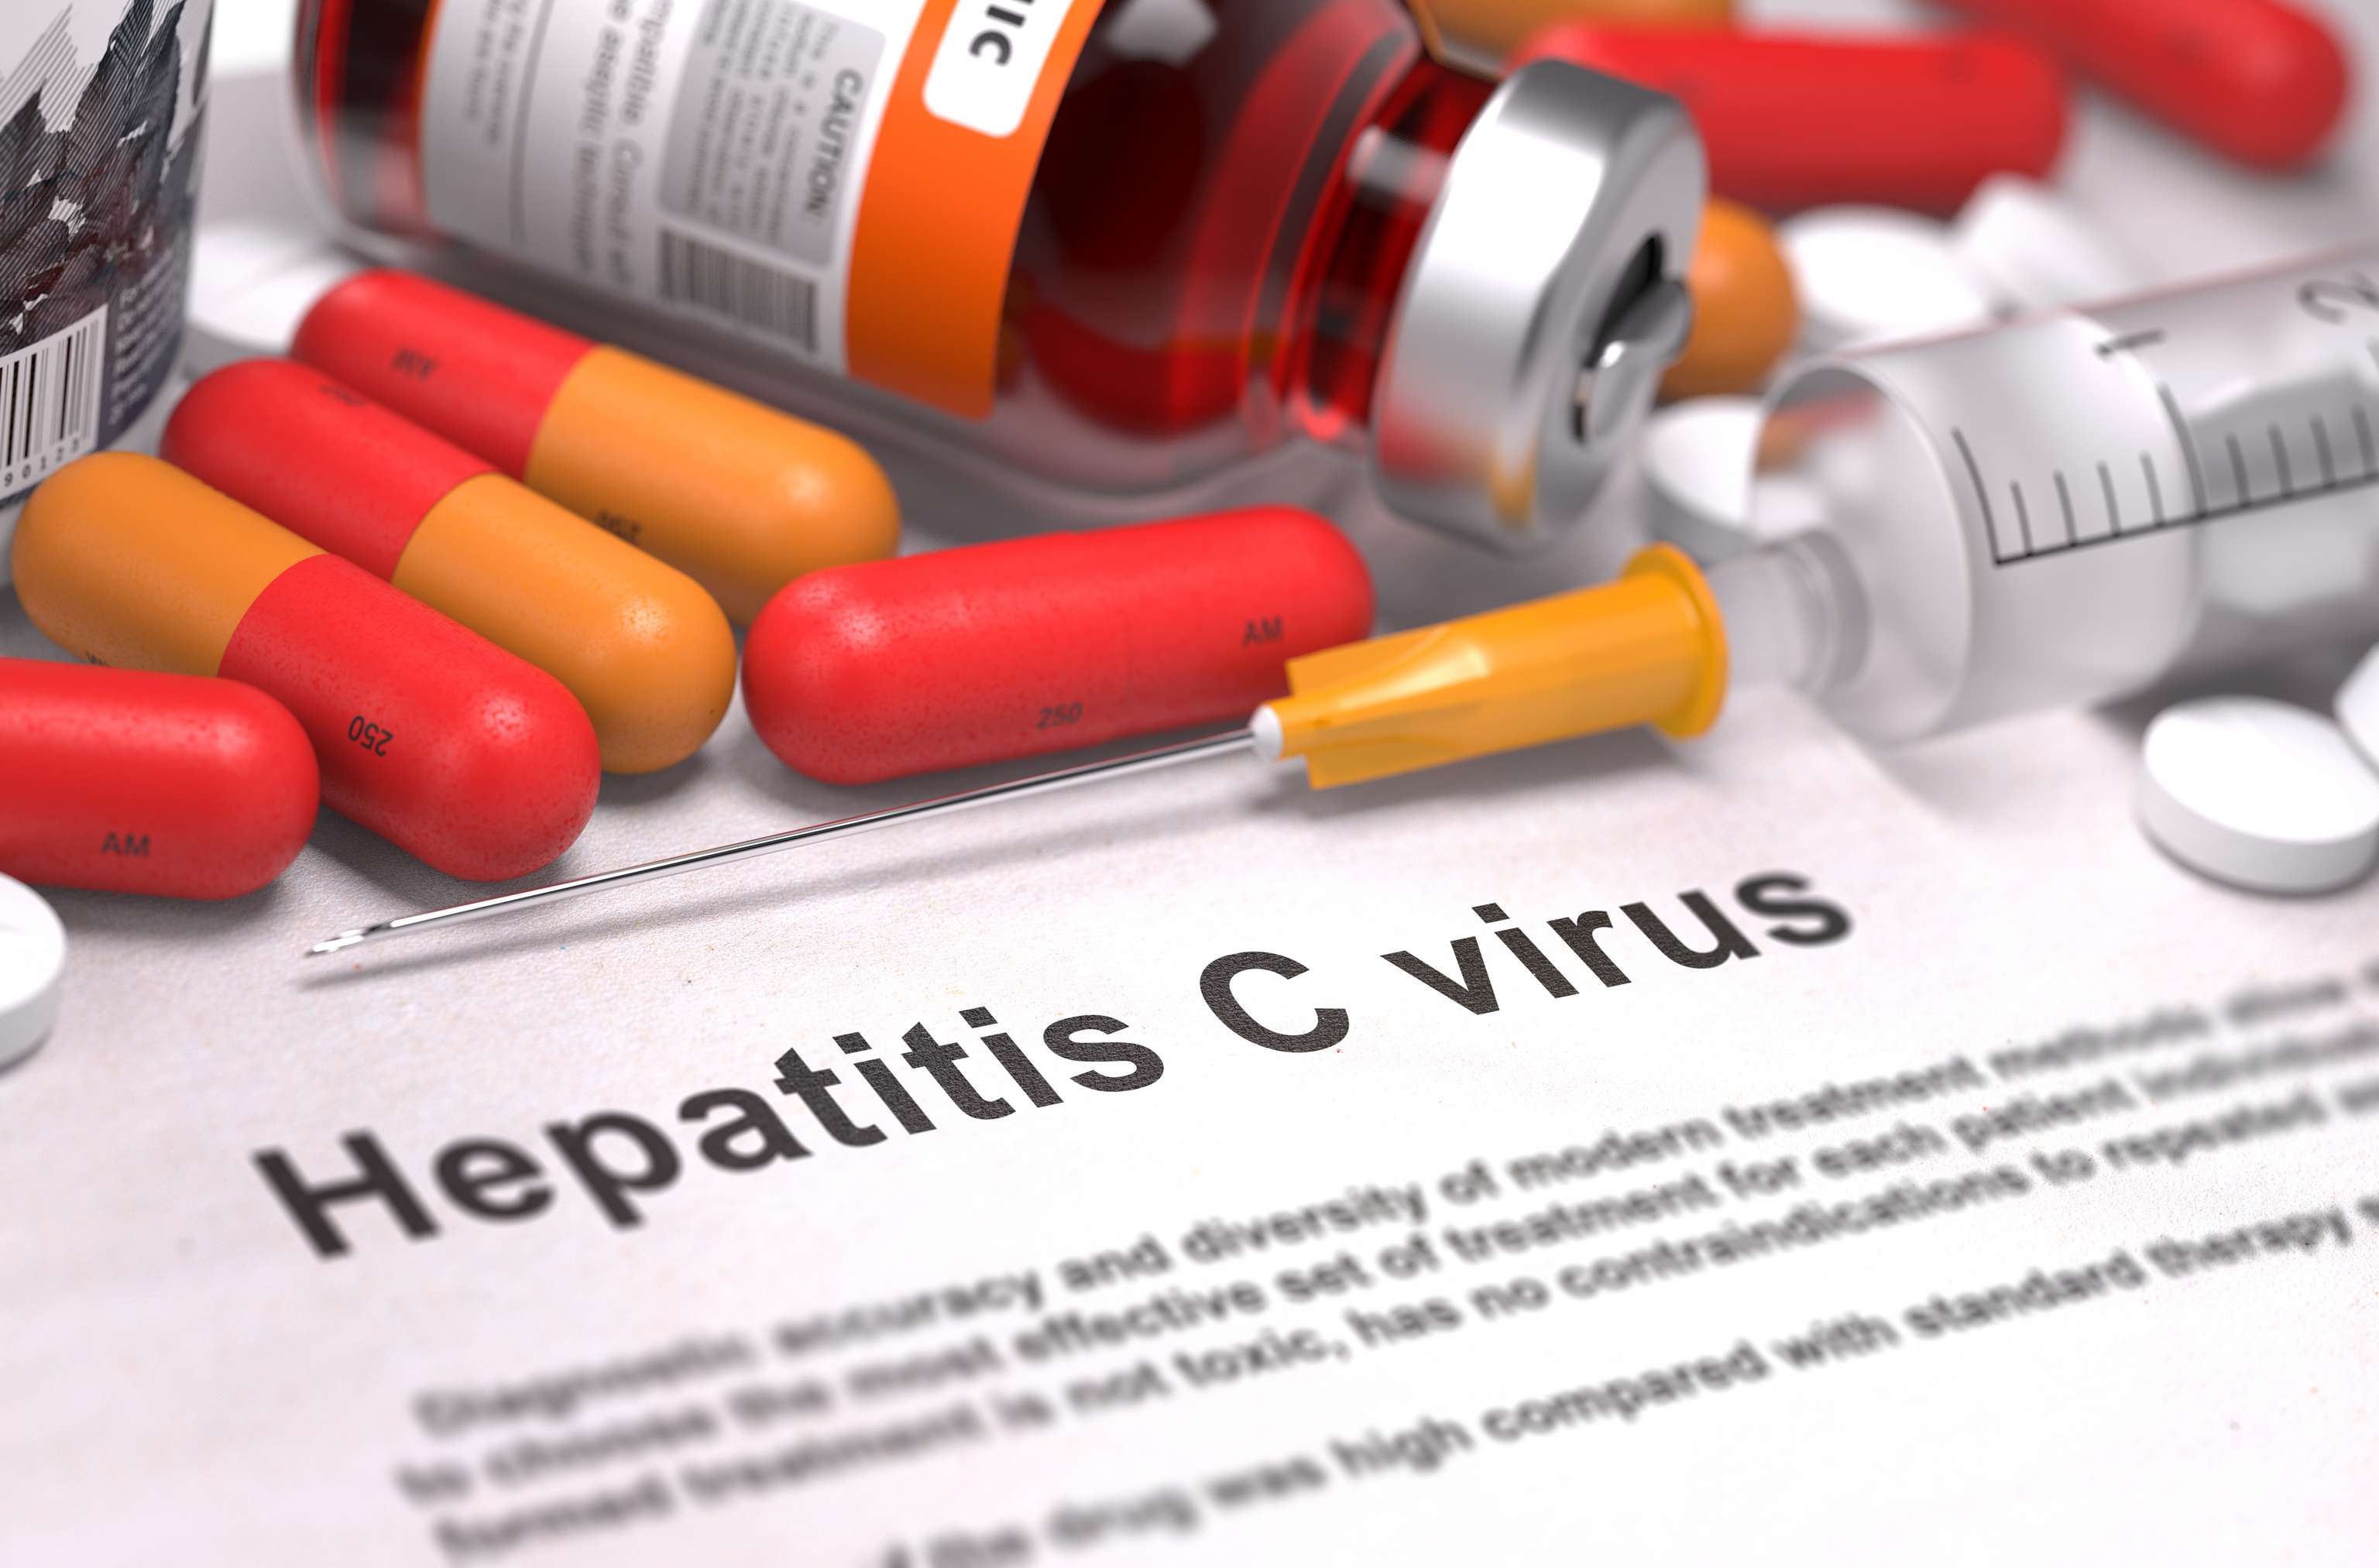 Diagnostic - virus de l'hépatite C. Rapport médical avec composition de médicaments - comprimés rouges, injections et seringue. Concentration sélective.